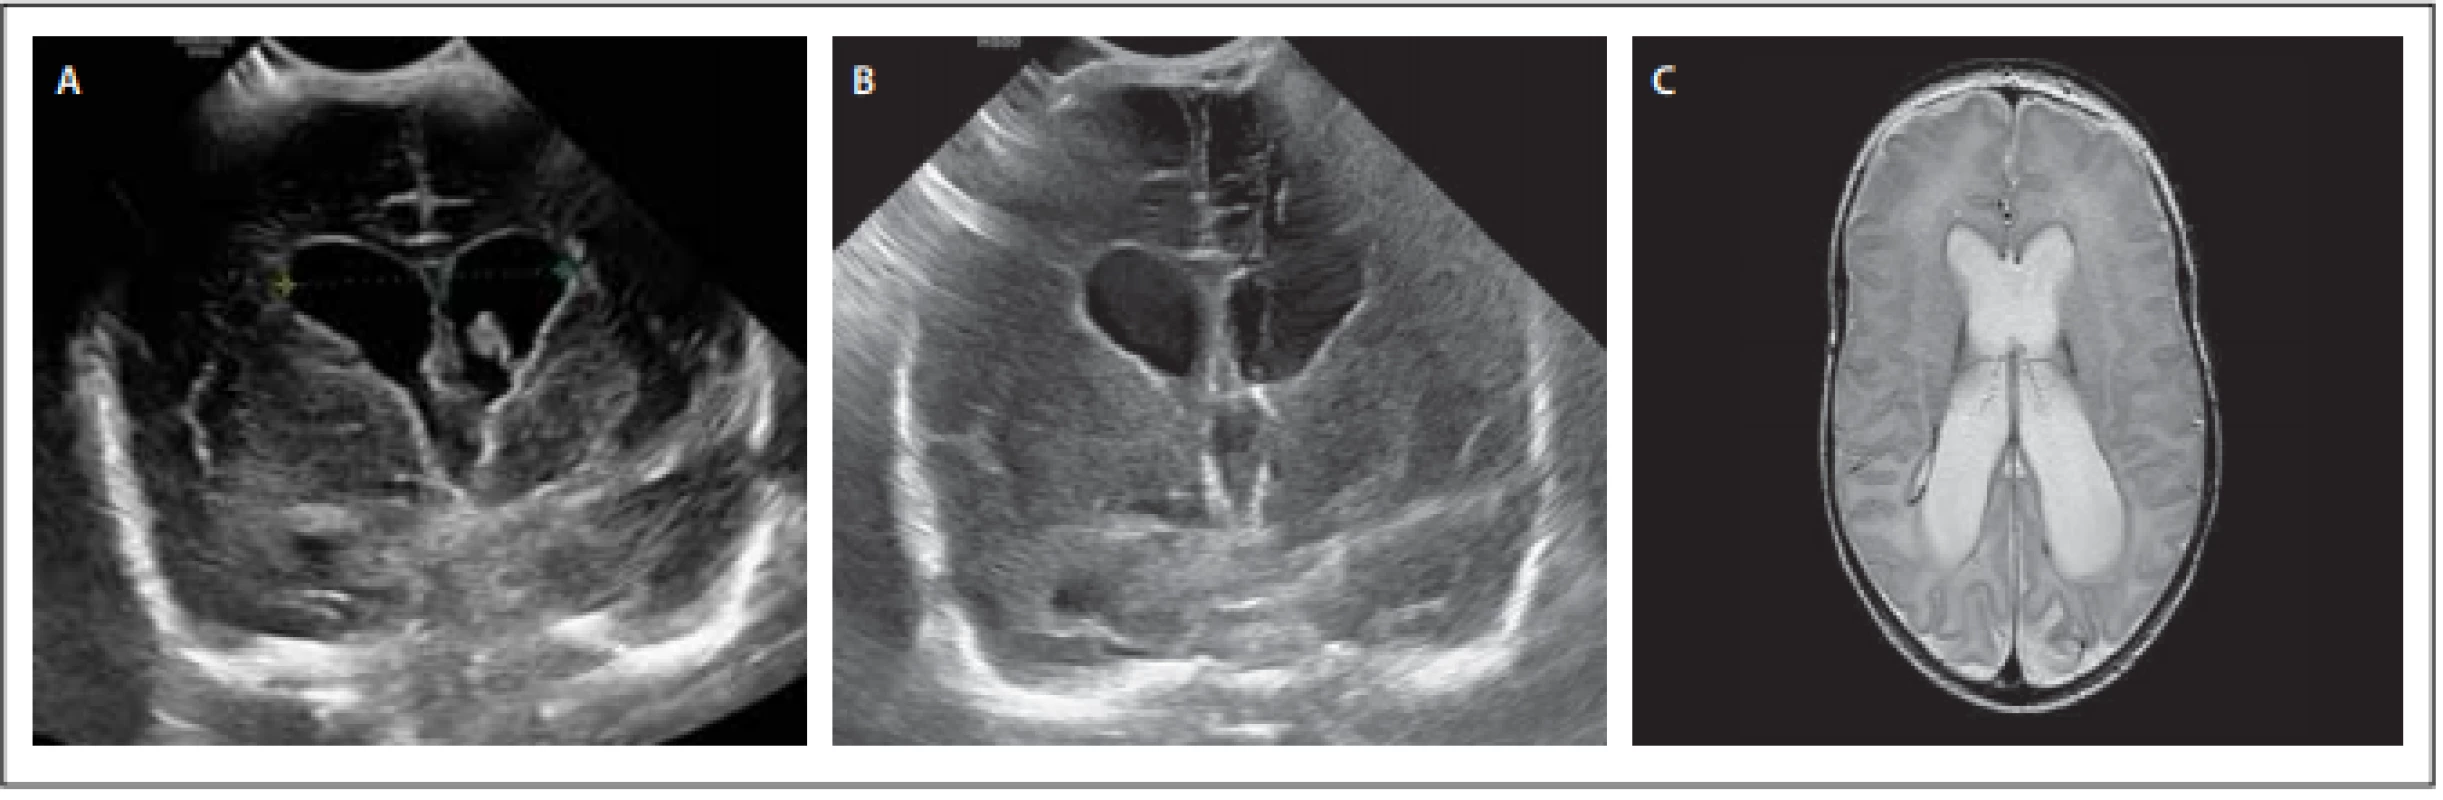 Pacient 2 – (A) předoperační sonografie ve fázi parciální redukce objemu koagula, ale progrese šíře komor; (B) pooperační UZ
s viditelným katétrem; (C) MR mozku s odstupem 3 měsíců s obrazem netenzní dilatace komorového systému.<br>
Fig. 2. Male patient 2 – (A) preoperative sonography in the phase of partial reduction of clot volume, but progression of ventricular width; (B) postoperative sonography with visible catheter; (C) MRI of the brain 3 months later with an image of non-tension dilatation of
the ventricular system.